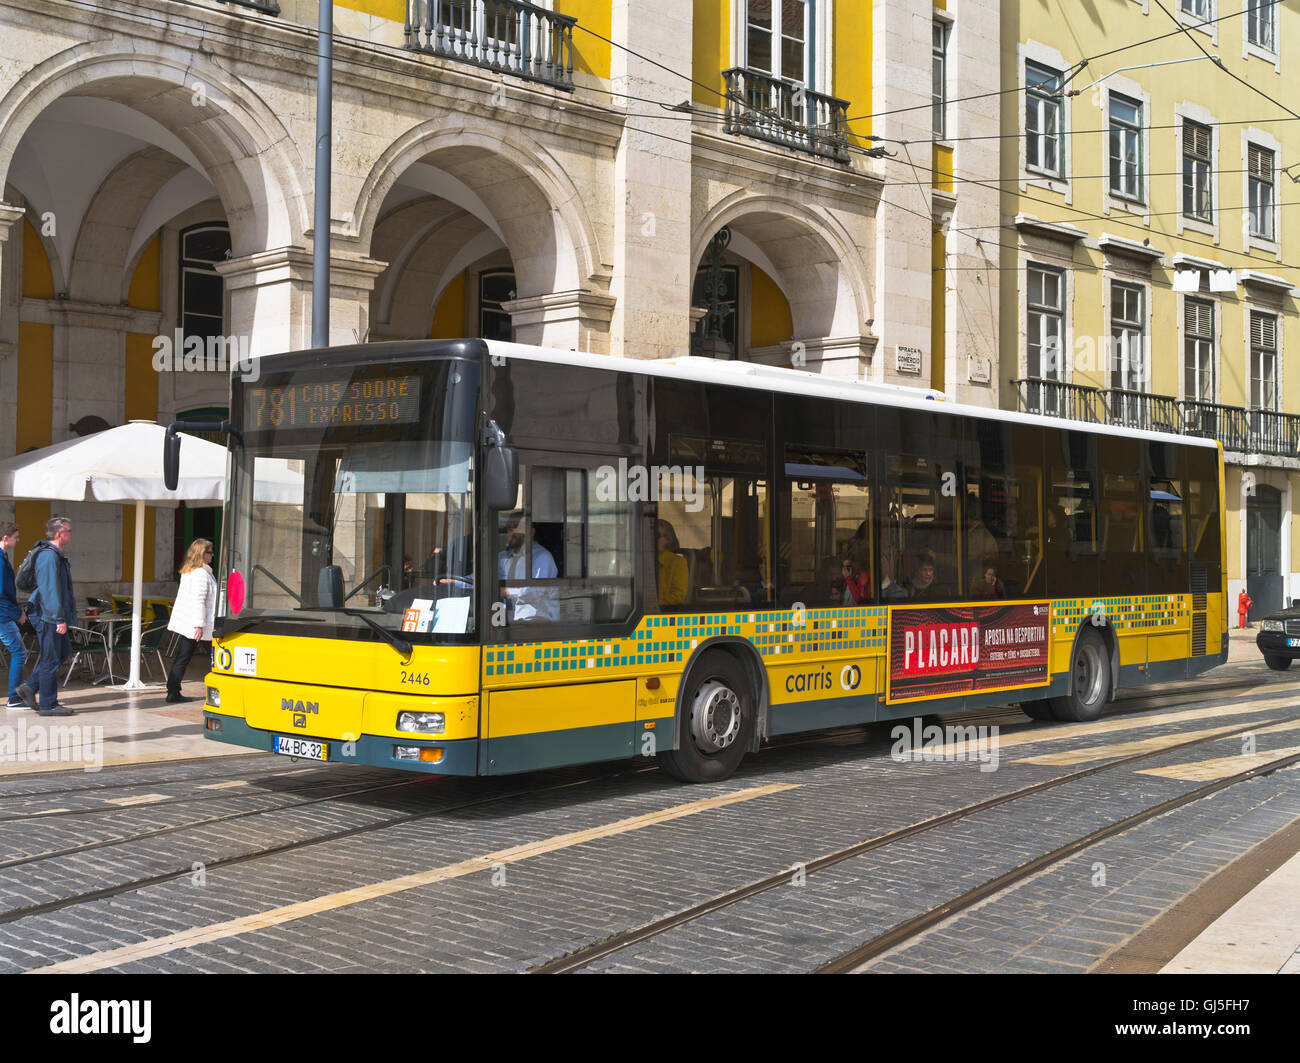 Dh Praca do Comercio Lisbonne Portugal Lisbonne ville singledecker transport bus seul autobus à deux étages Banque D'Images